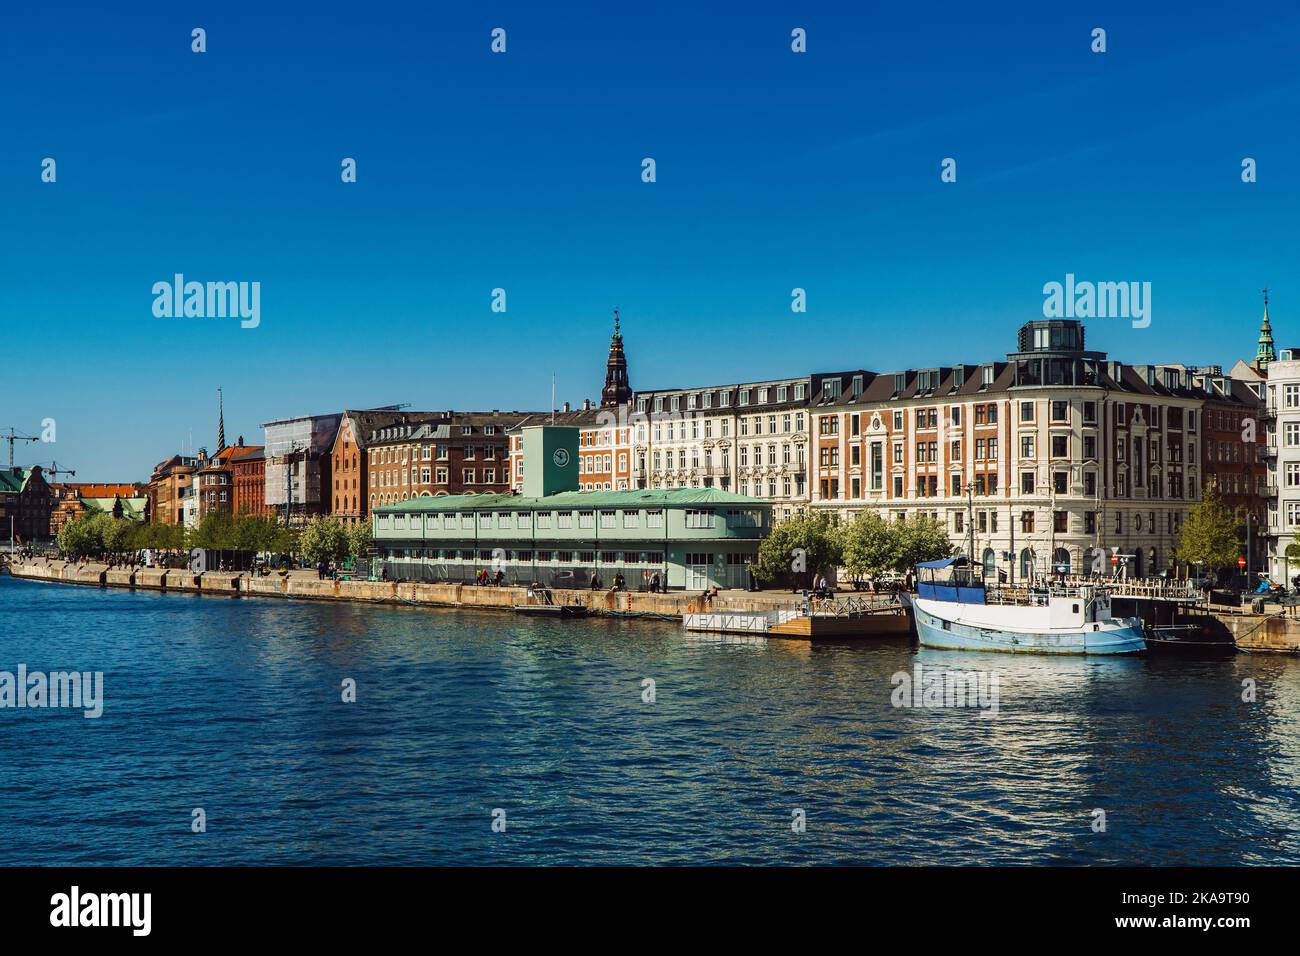 Promenade du front de mer de Havnegade dans le centre de Copenhague, Danemark. Banque D'Images